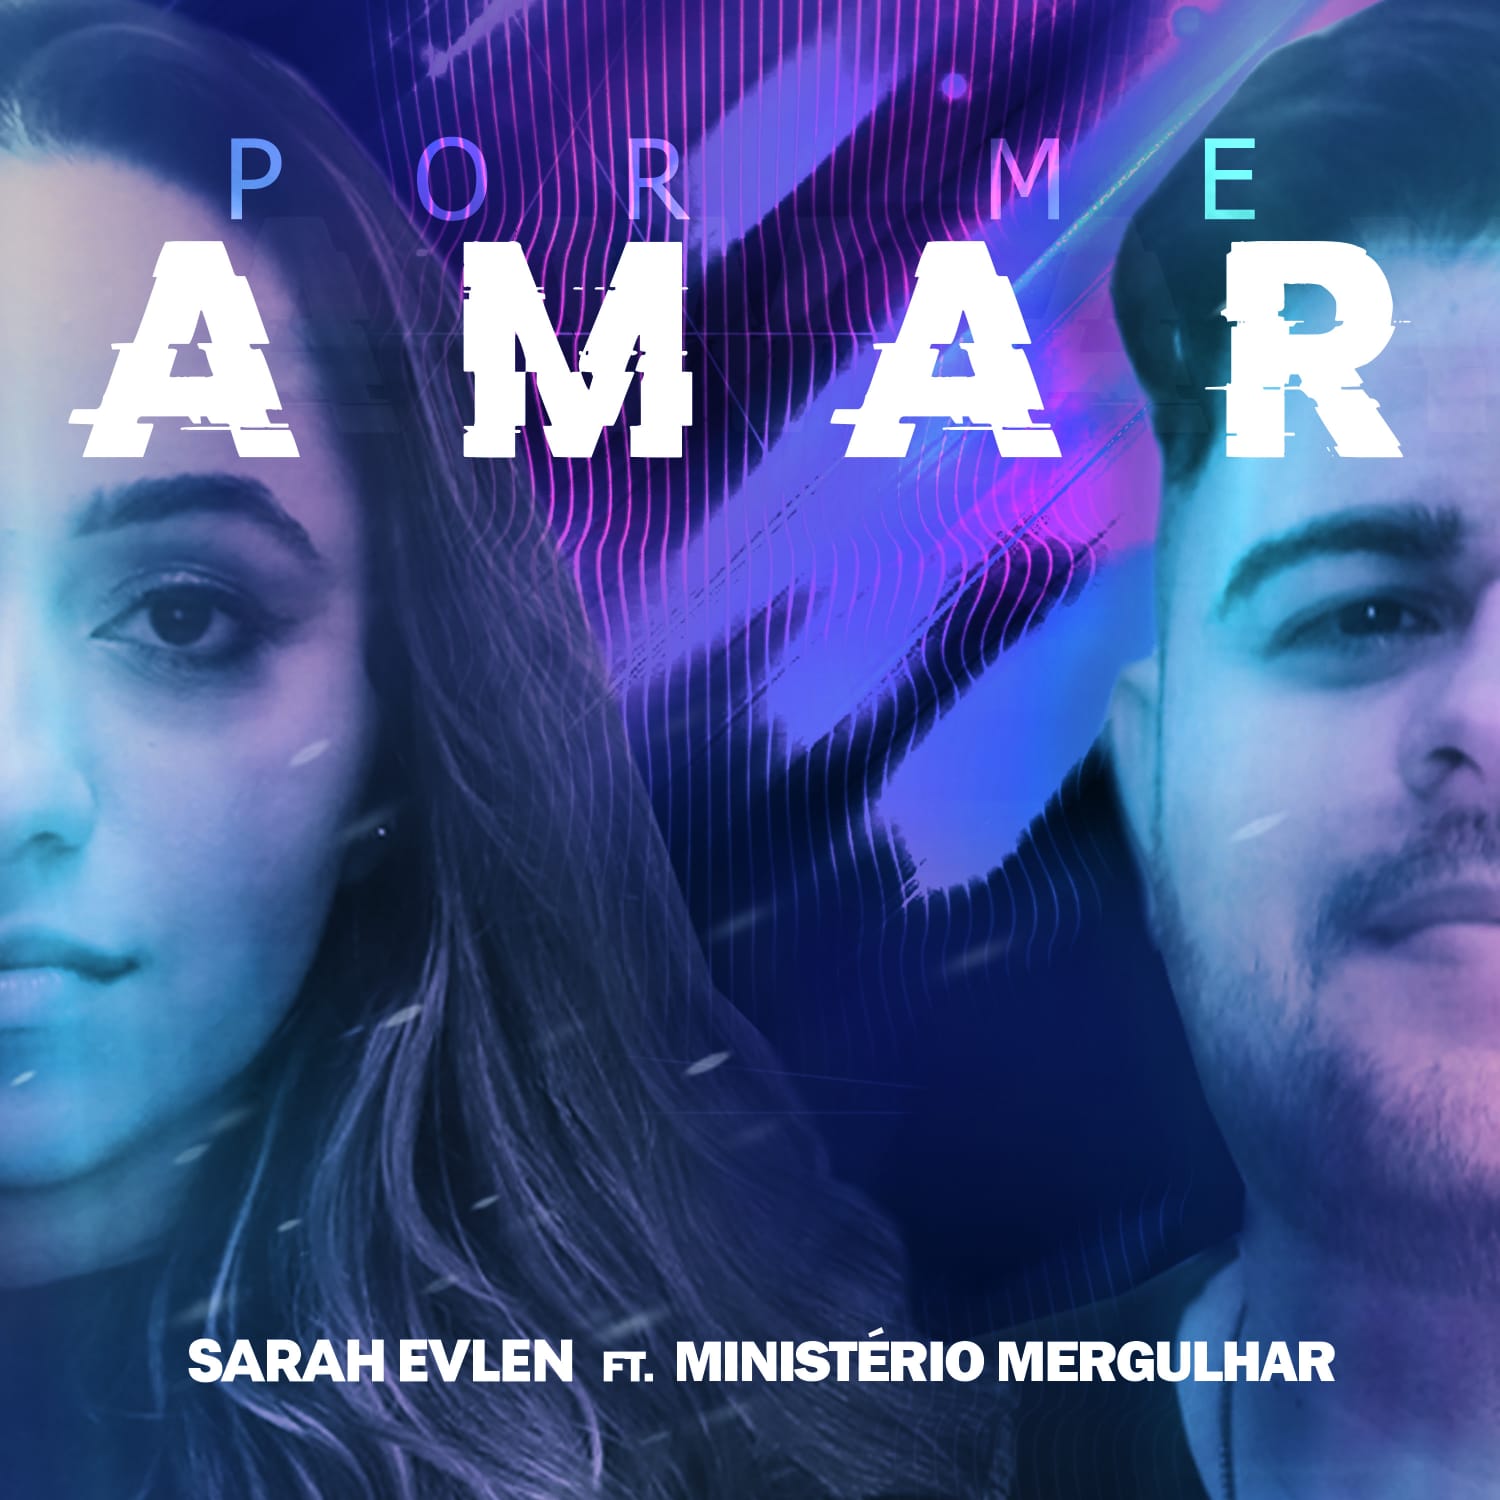 Sarah Evlen lança “Por me Amar” feat. Ministério Mergulhar – um belo single de adoração e gratidão